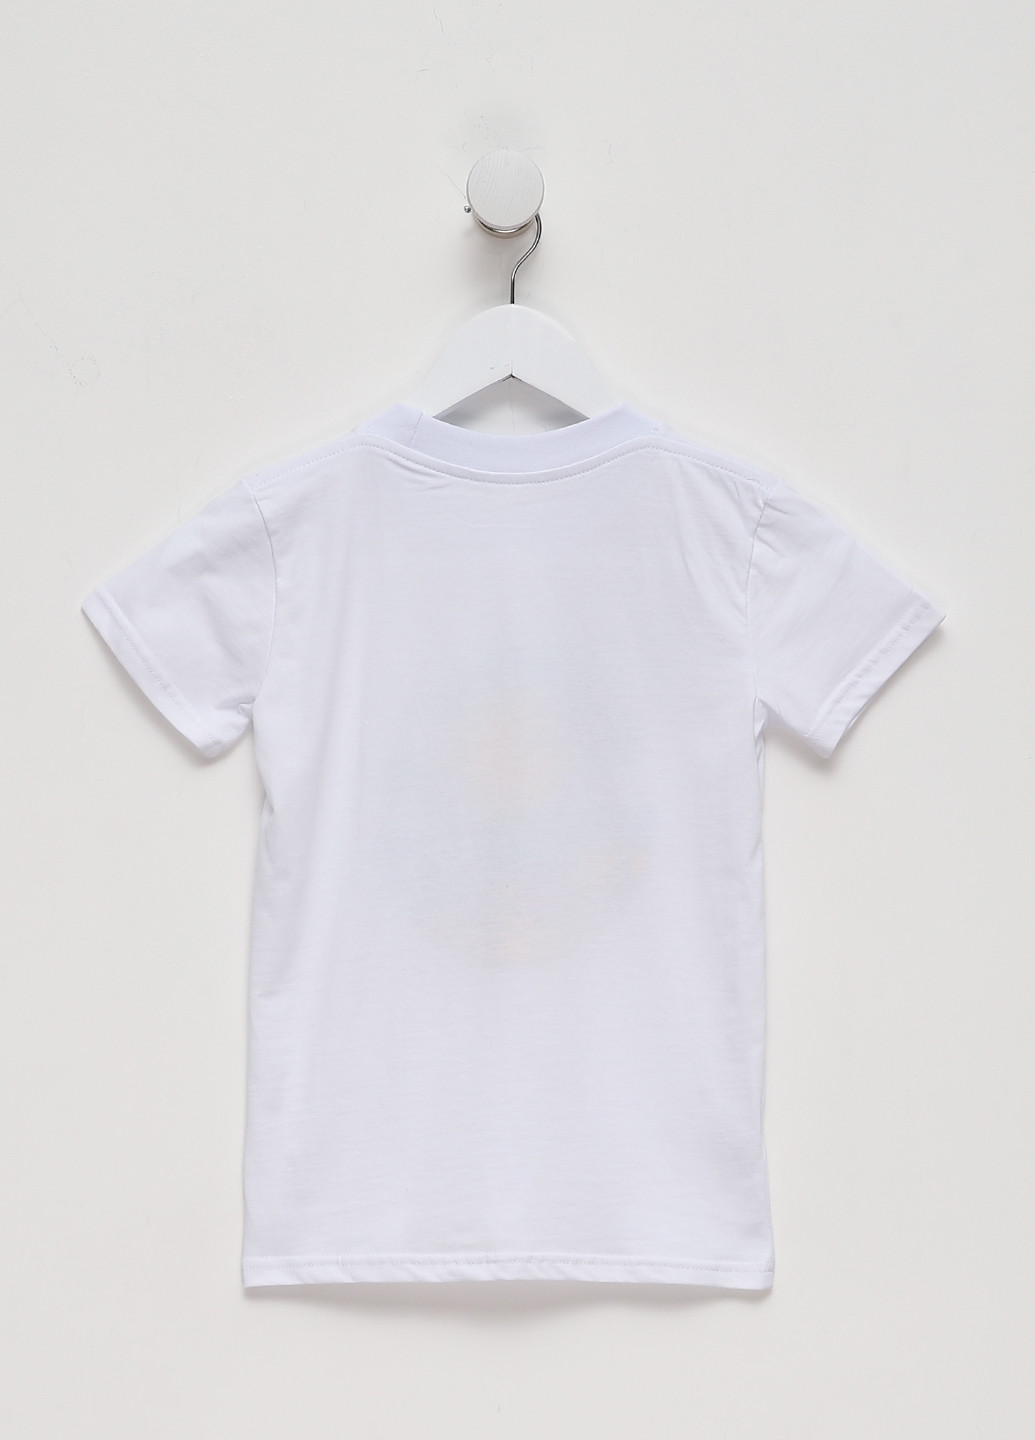 Белая демисезонная футболка для мальчиков д403/1-17-н белая Malta